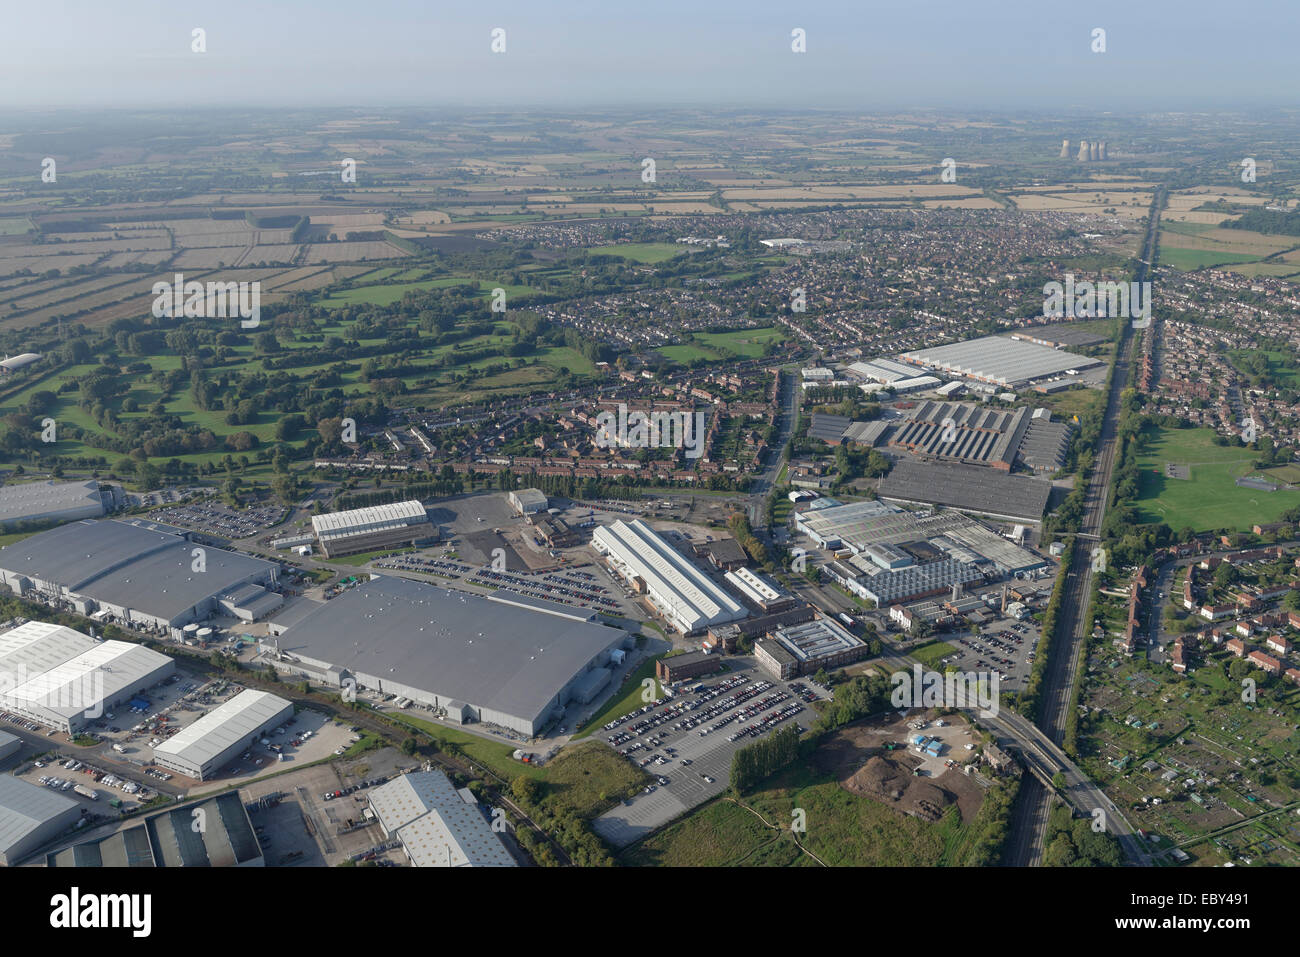 Une vue aérienne de la région de Derby Sinfin montrant un parc de vente au détail, de logement et d'une Rolls Royce factory Banque D'Images